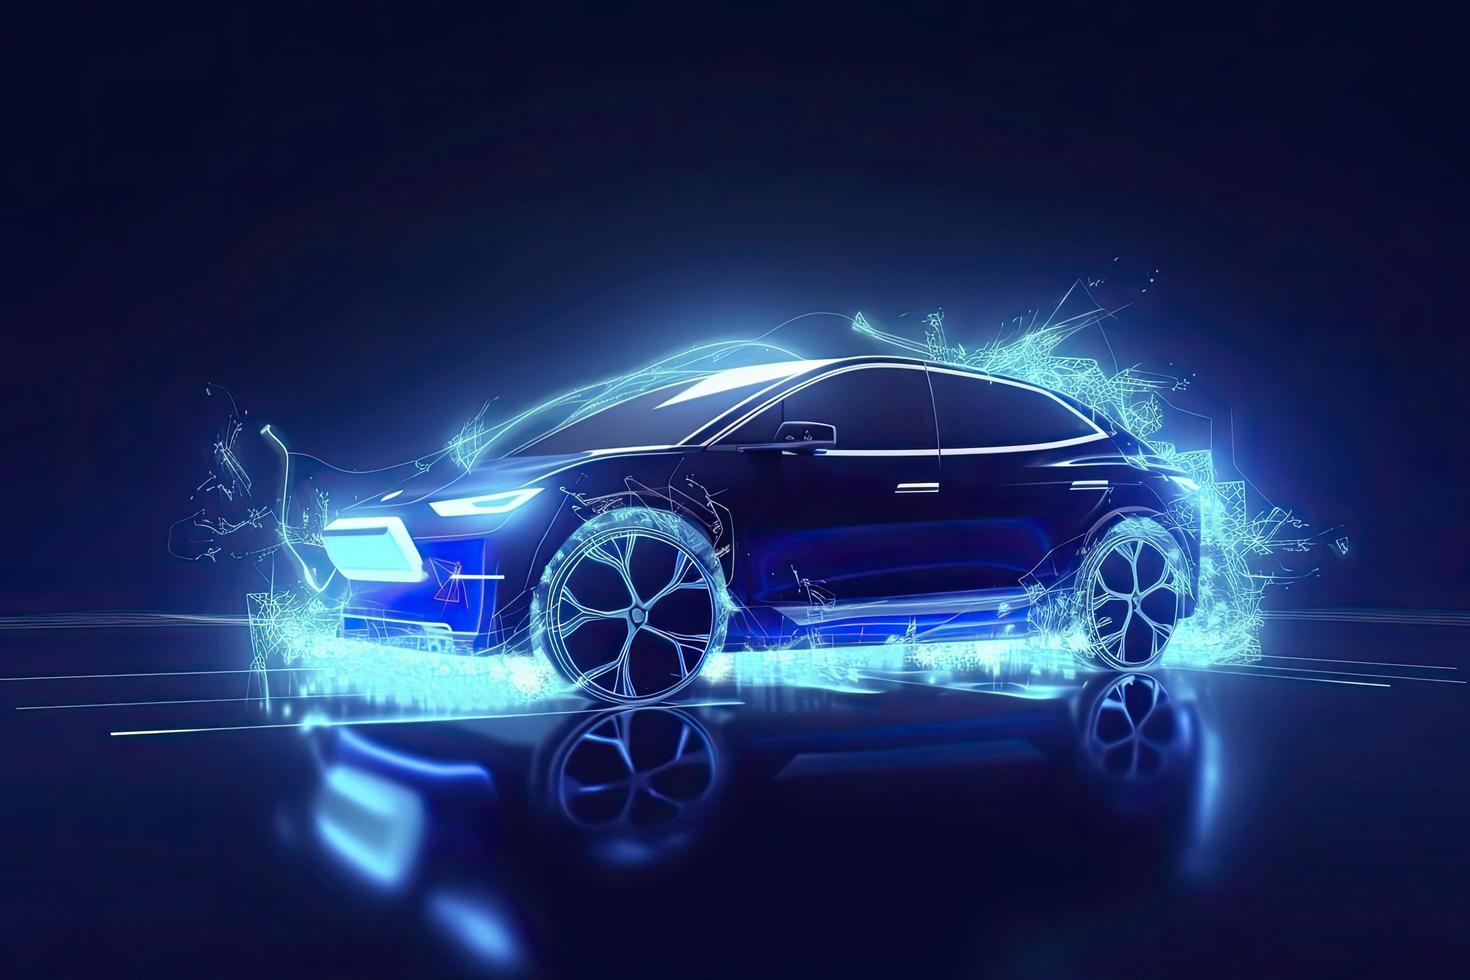 voitures électriques à vitesse abstraite dans l'illustration, les voitures électriques sont alimentées par l'énergie électrique. future energy.on fond bleu photo